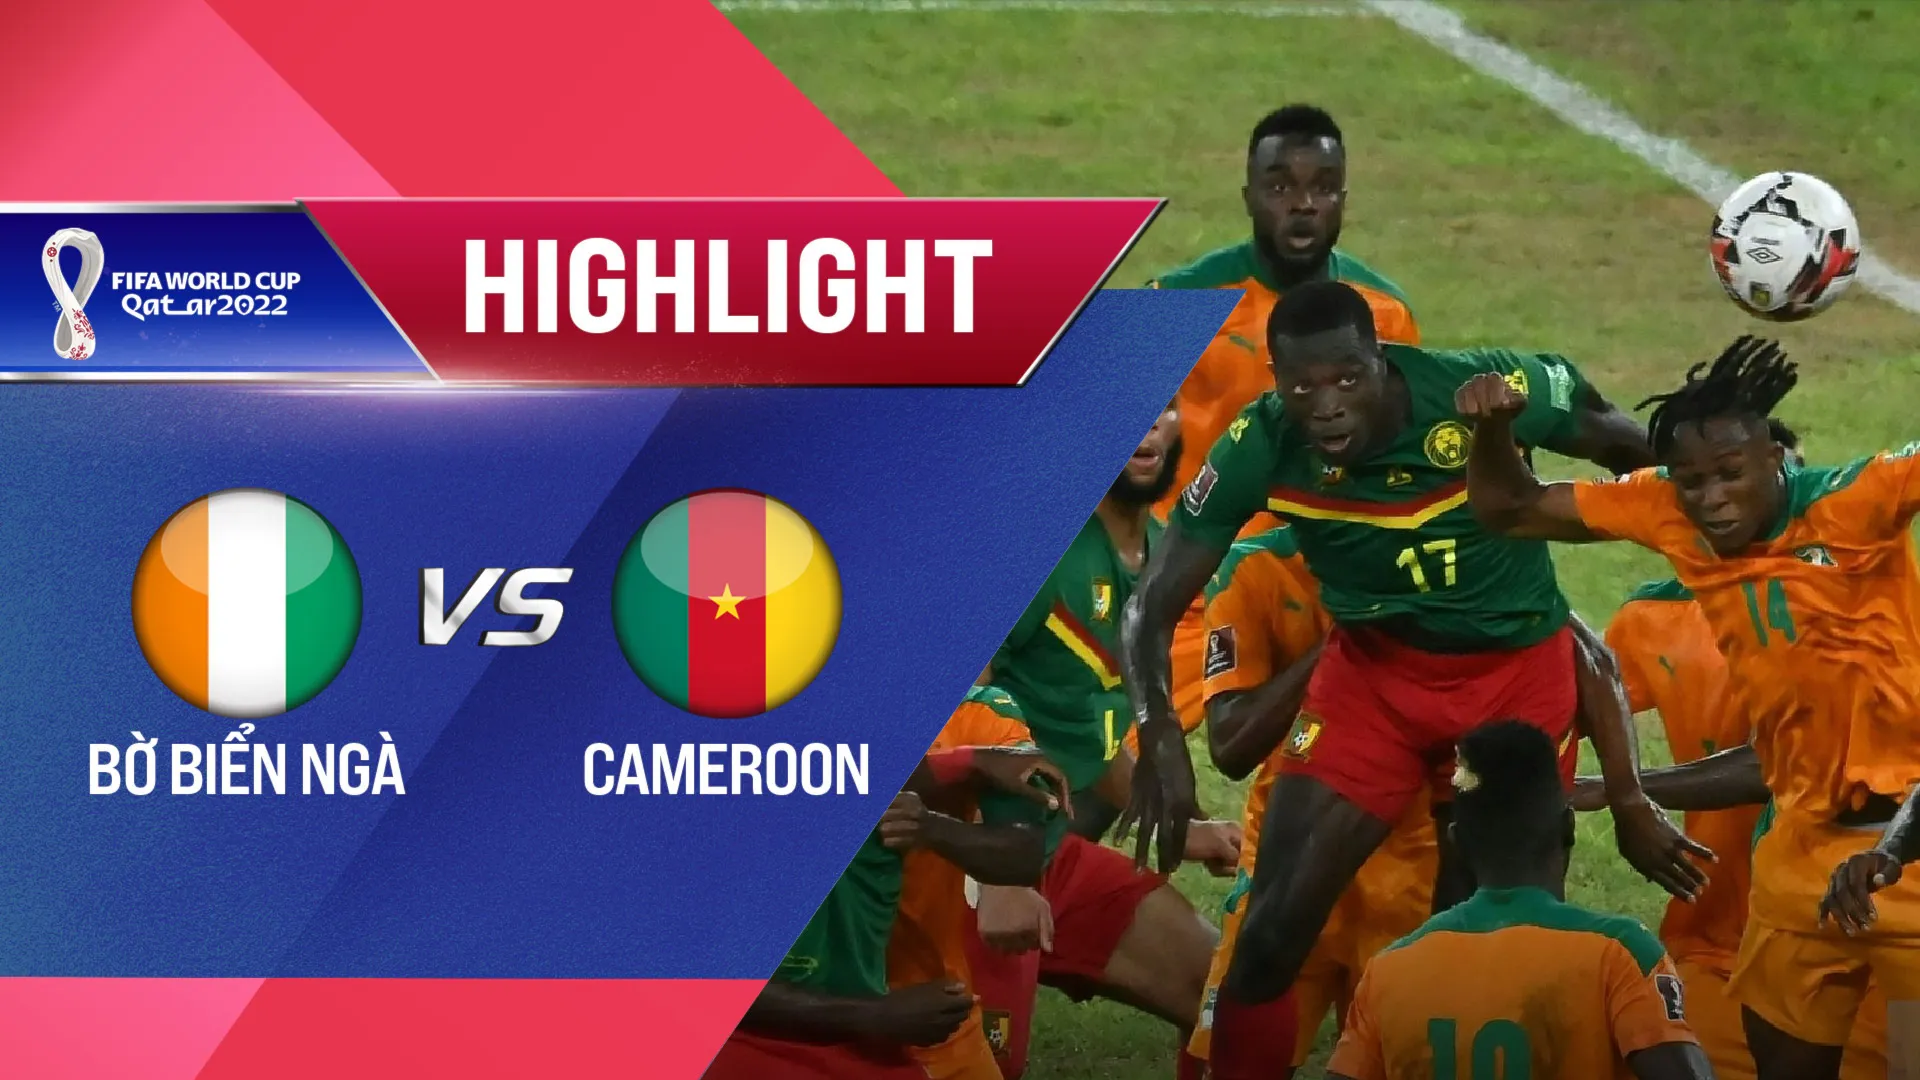 Highlights Bờ Biển Ngà - Cameroon (Vòng Loại World Cup 2022 - Khu vực châu Phi)